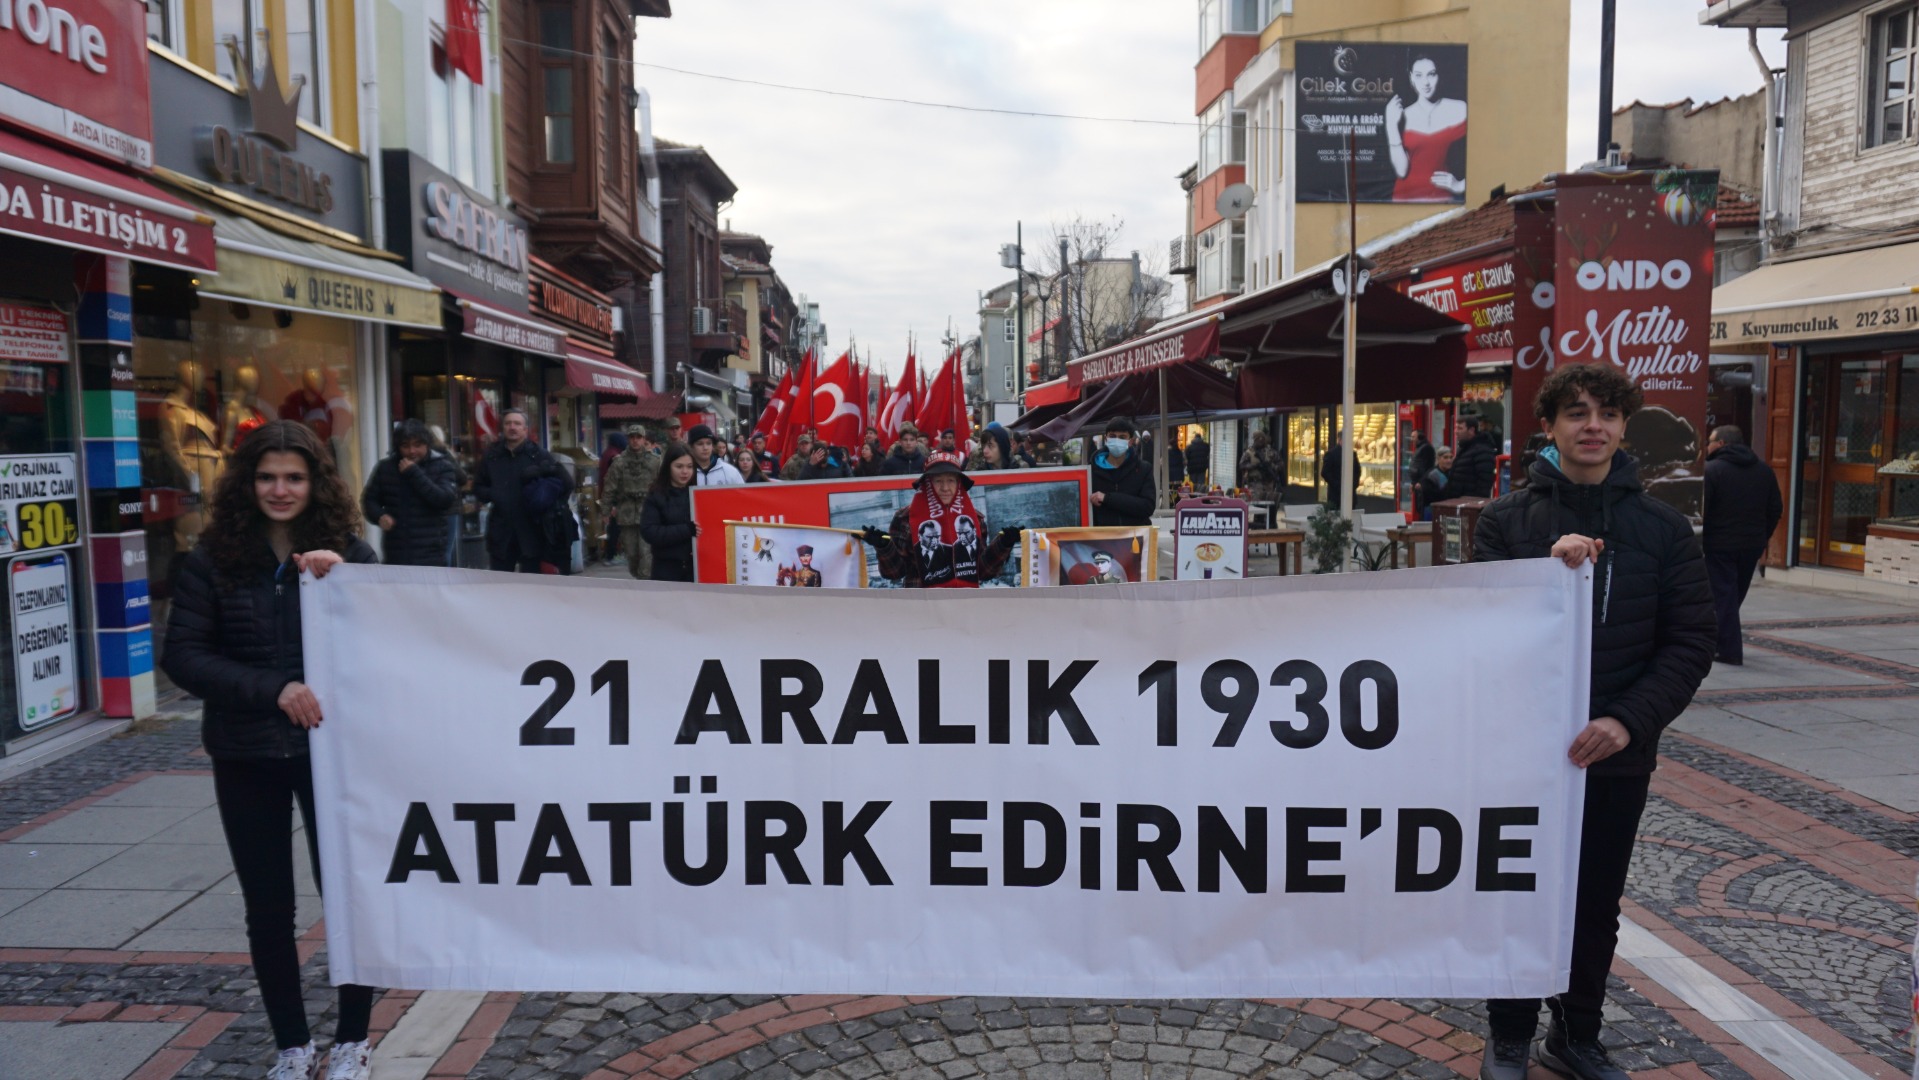 Atatürk'ün Edirne'ye gelişinin 92’nci yılı törenle kutlandı 